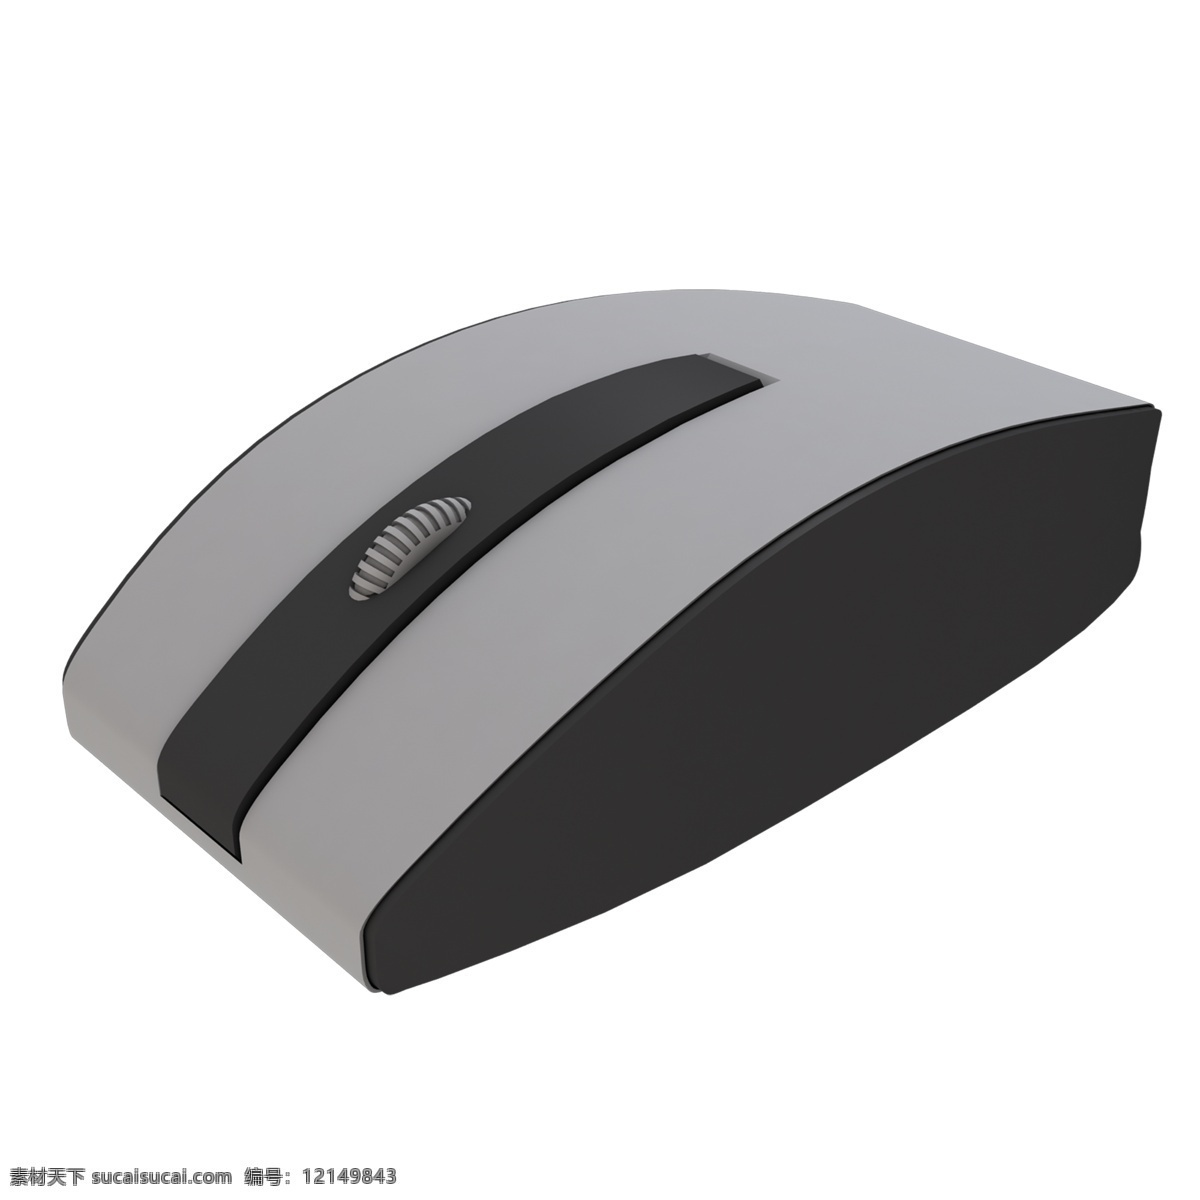 灰色 立体 创意 科技 鼠标 元素 纹理 光泽 质感 滚动 滑轮 旋转 操作 真实 商务 办公设备